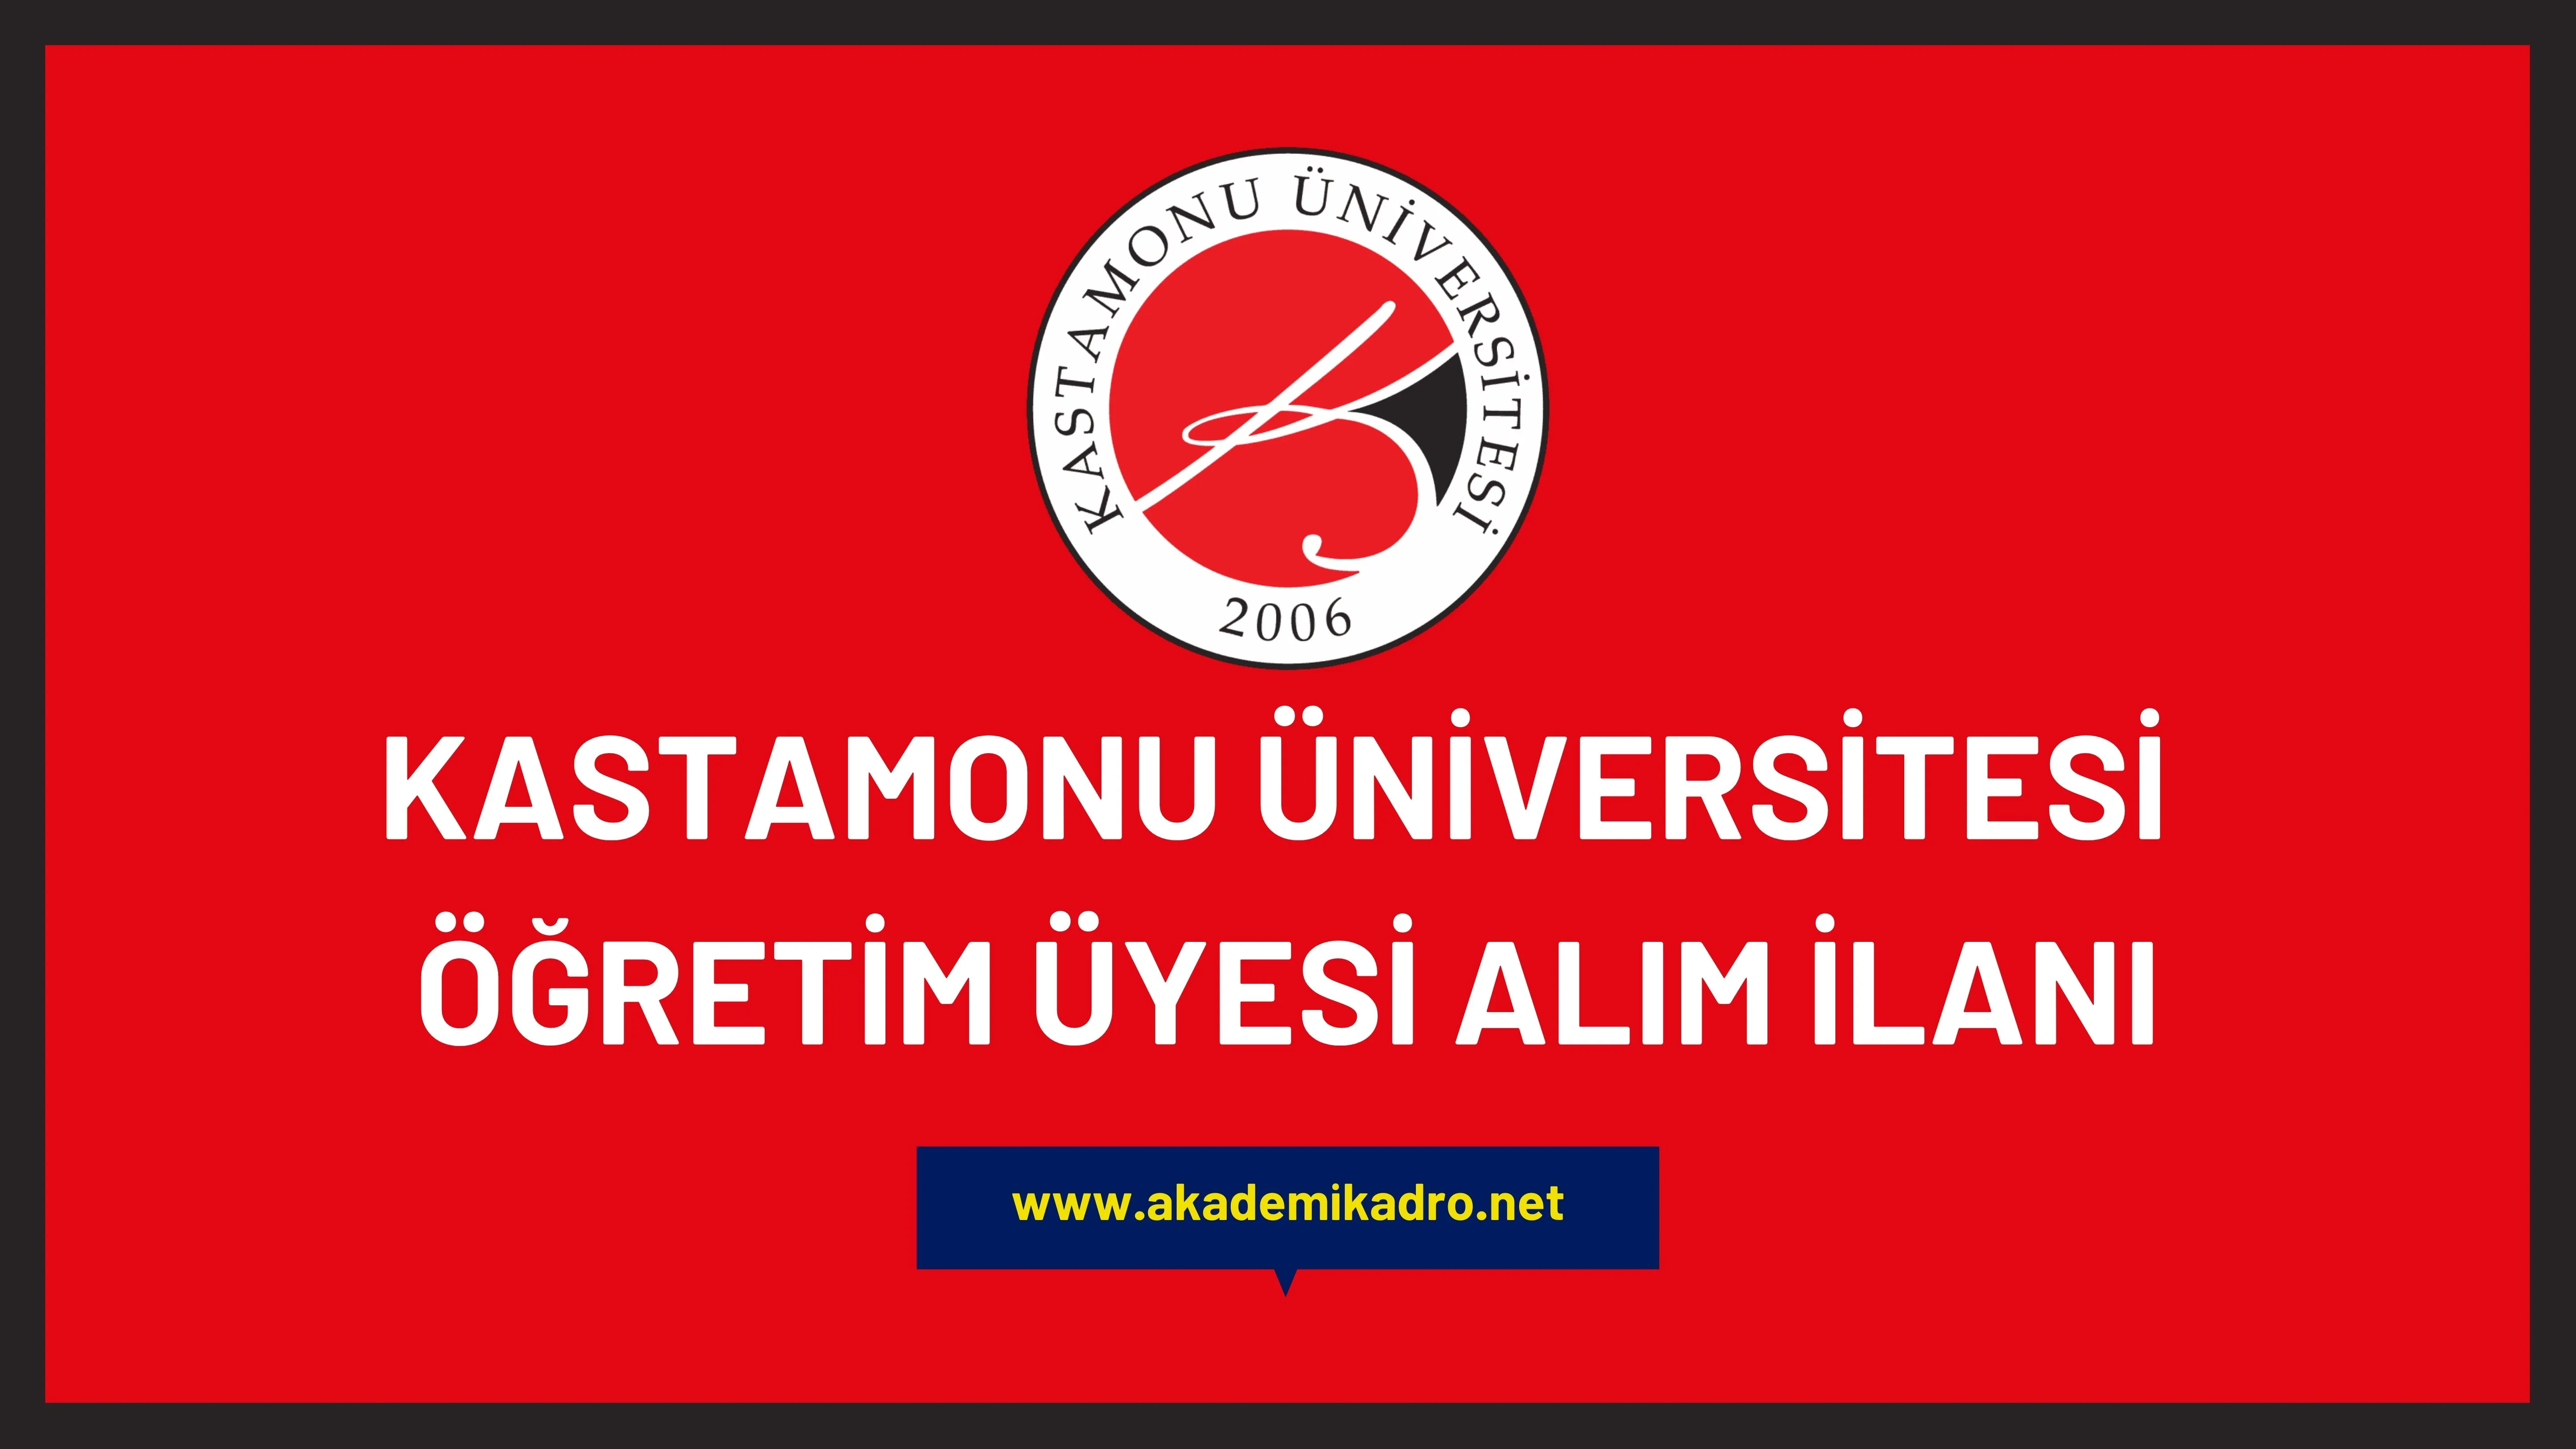 Kastamonu Üniversitesi birçok alandan 30 akademik personel alacak.